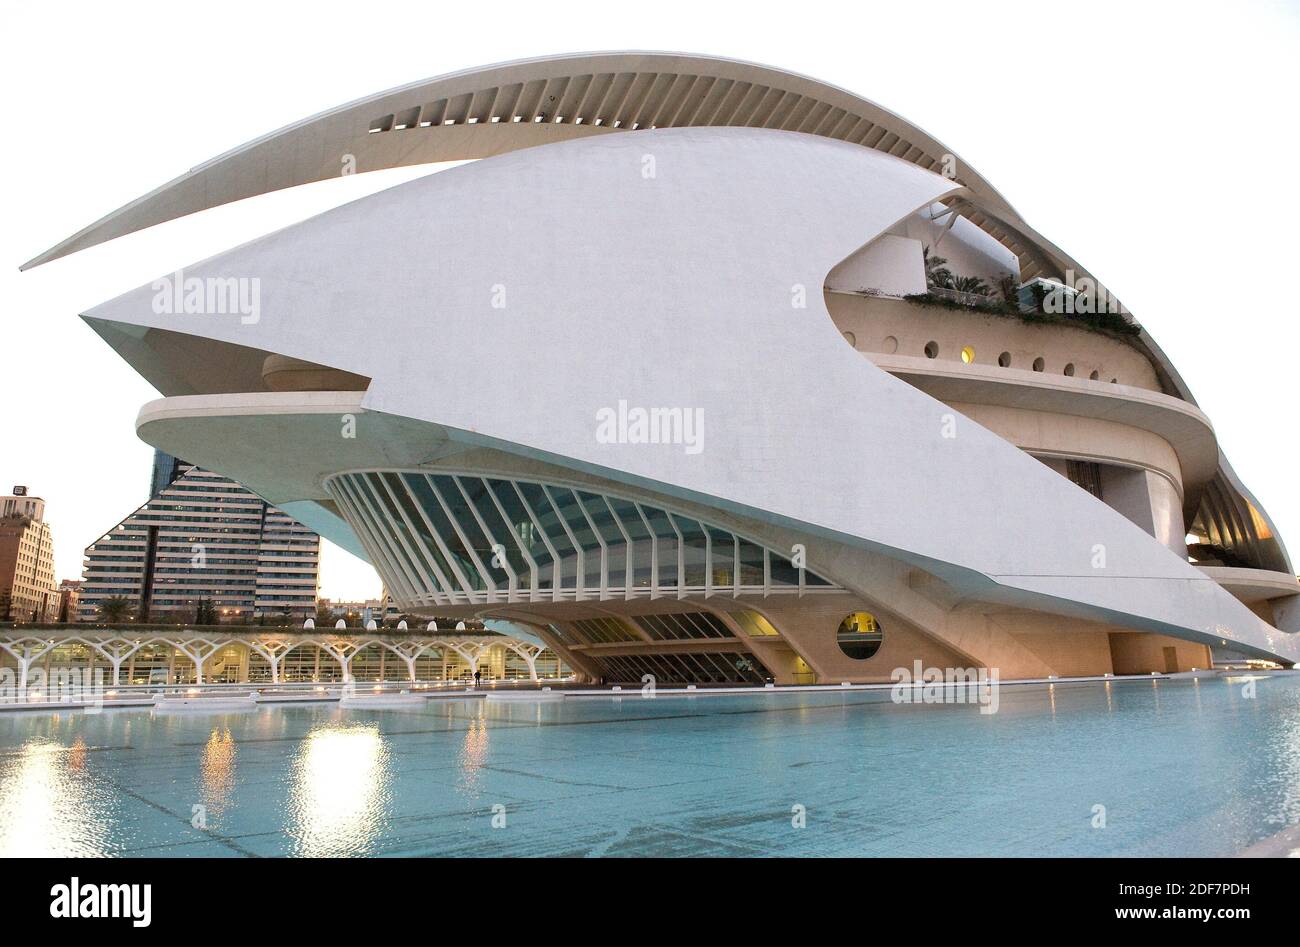 Valencia, Ciutat de les Arts i les Ciencies by Santiago Calatrava. Palau de les Arts. Comunidad Valenciana, Spain. Stock Photo